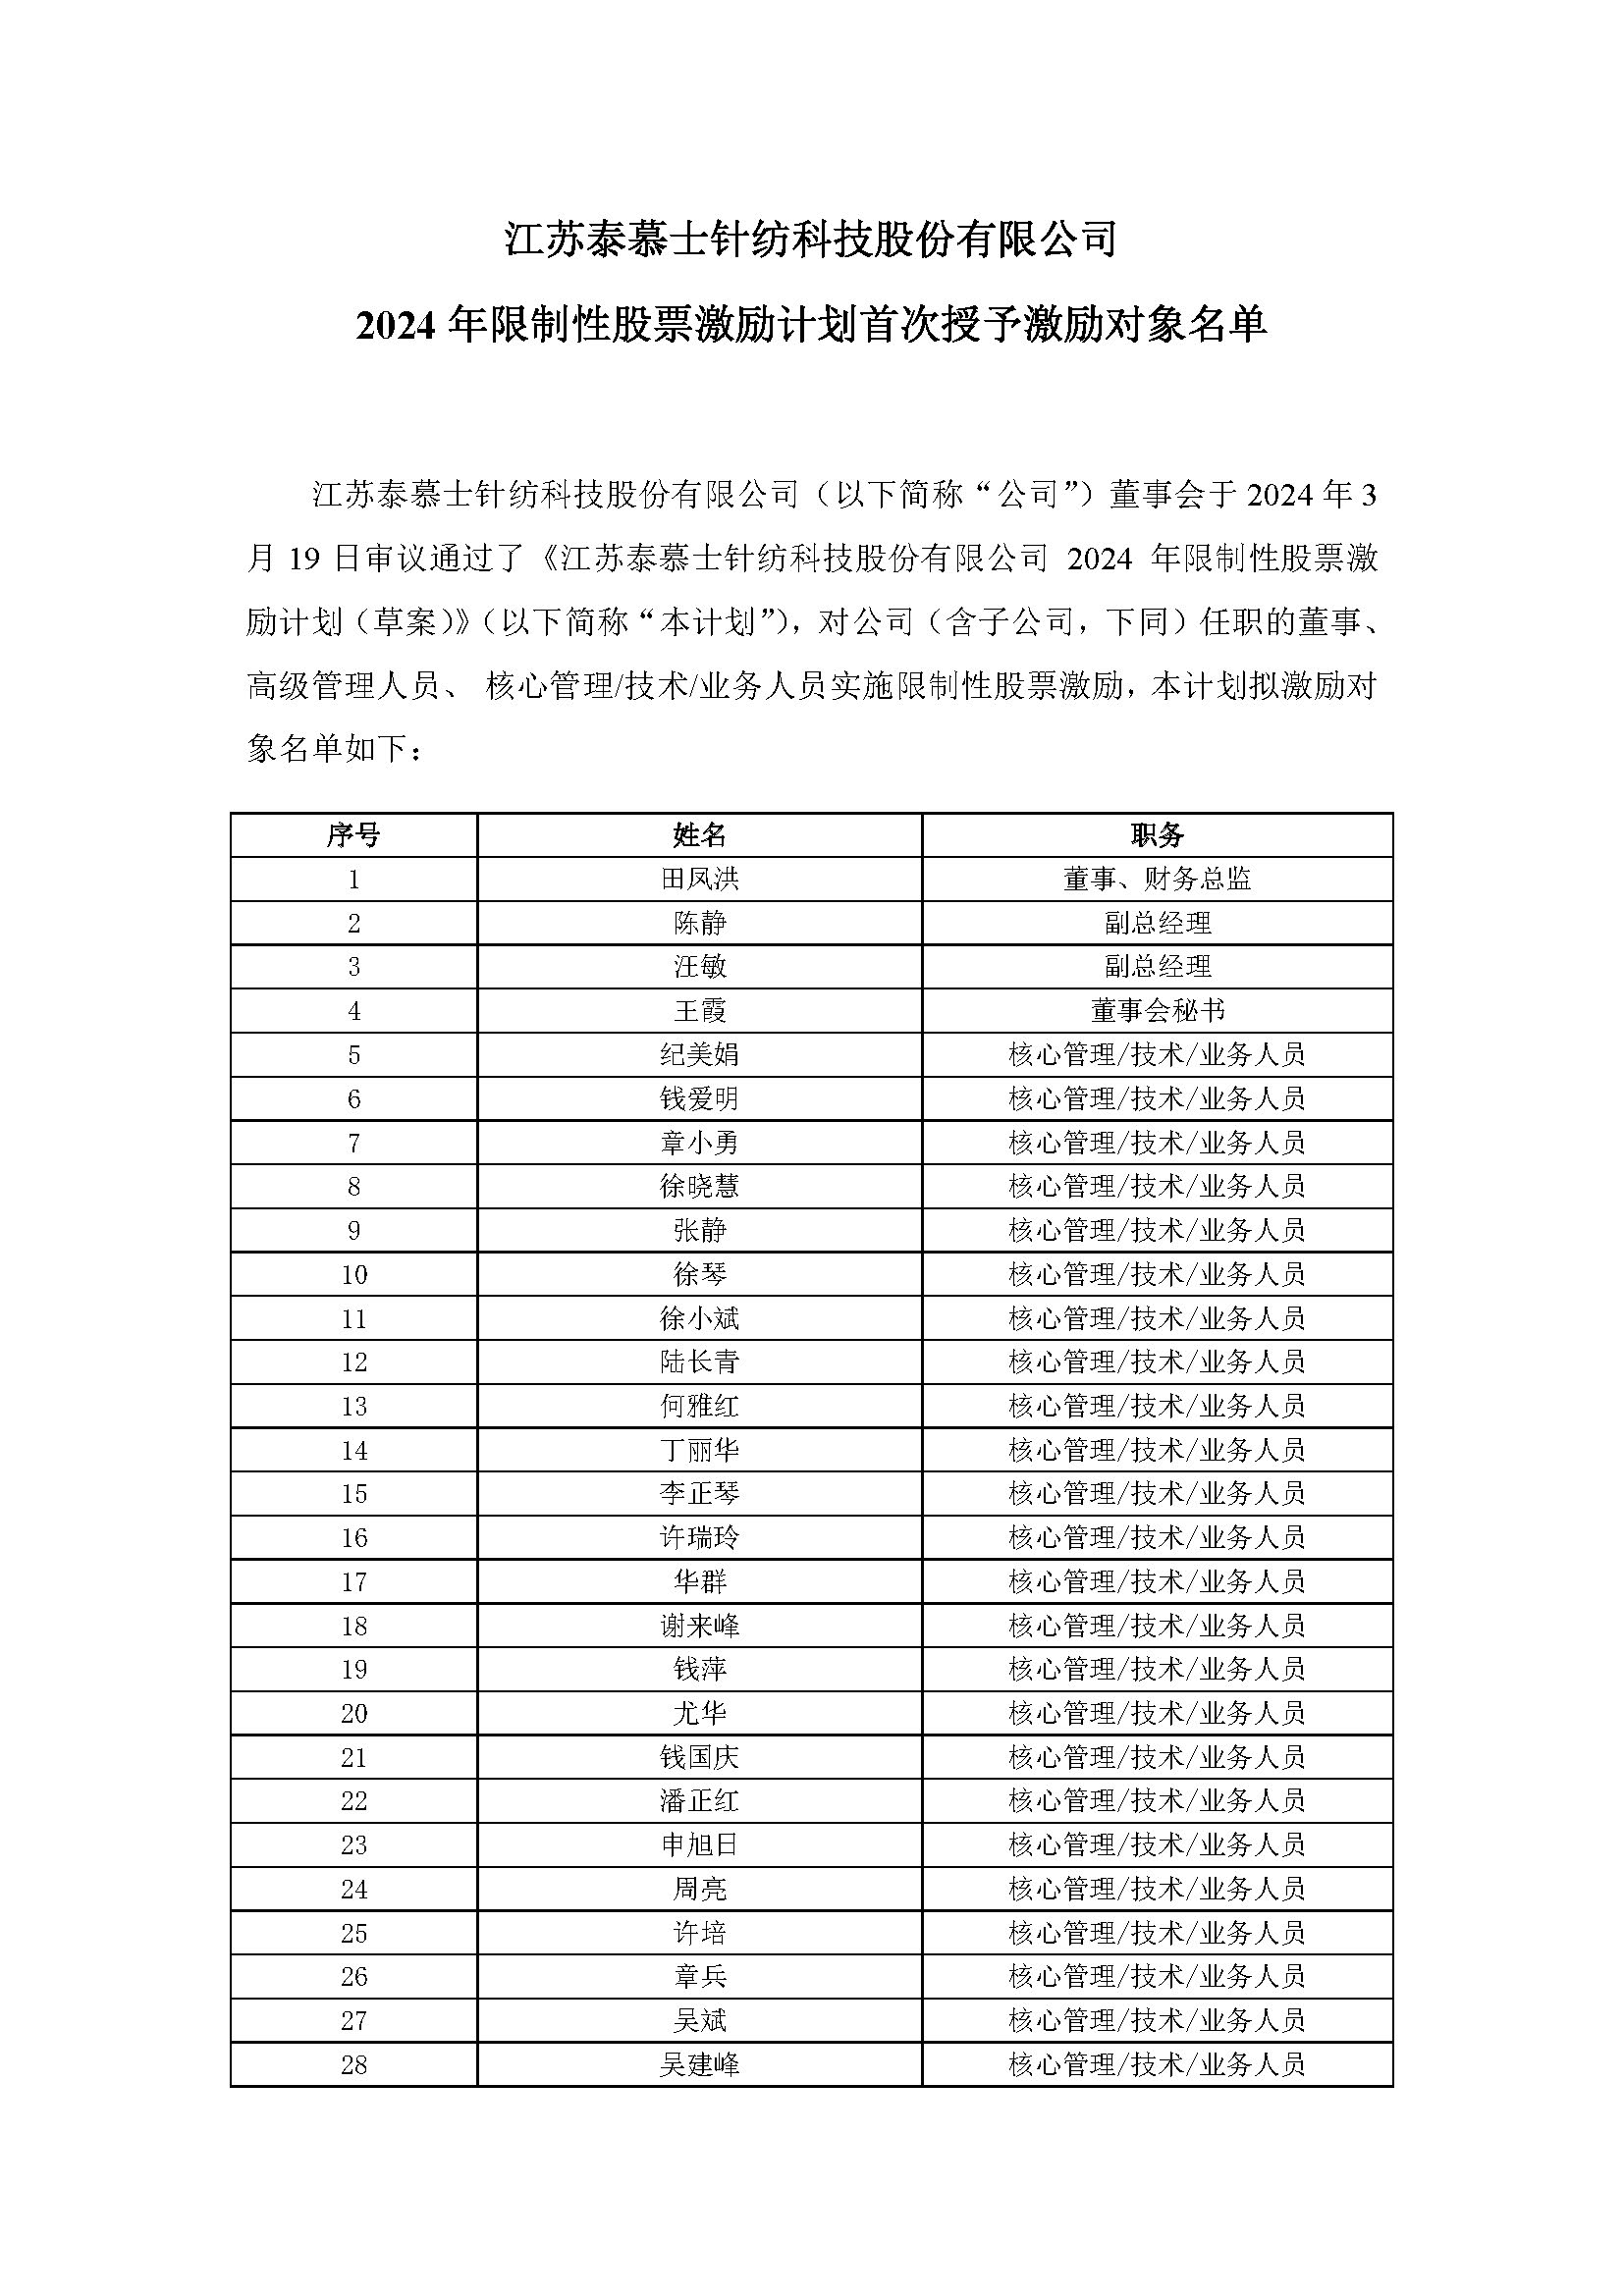 江苏BOB游戏官方针纺科技股份有限公司 2024年限制性股票激励计划首次授予激励对象名单